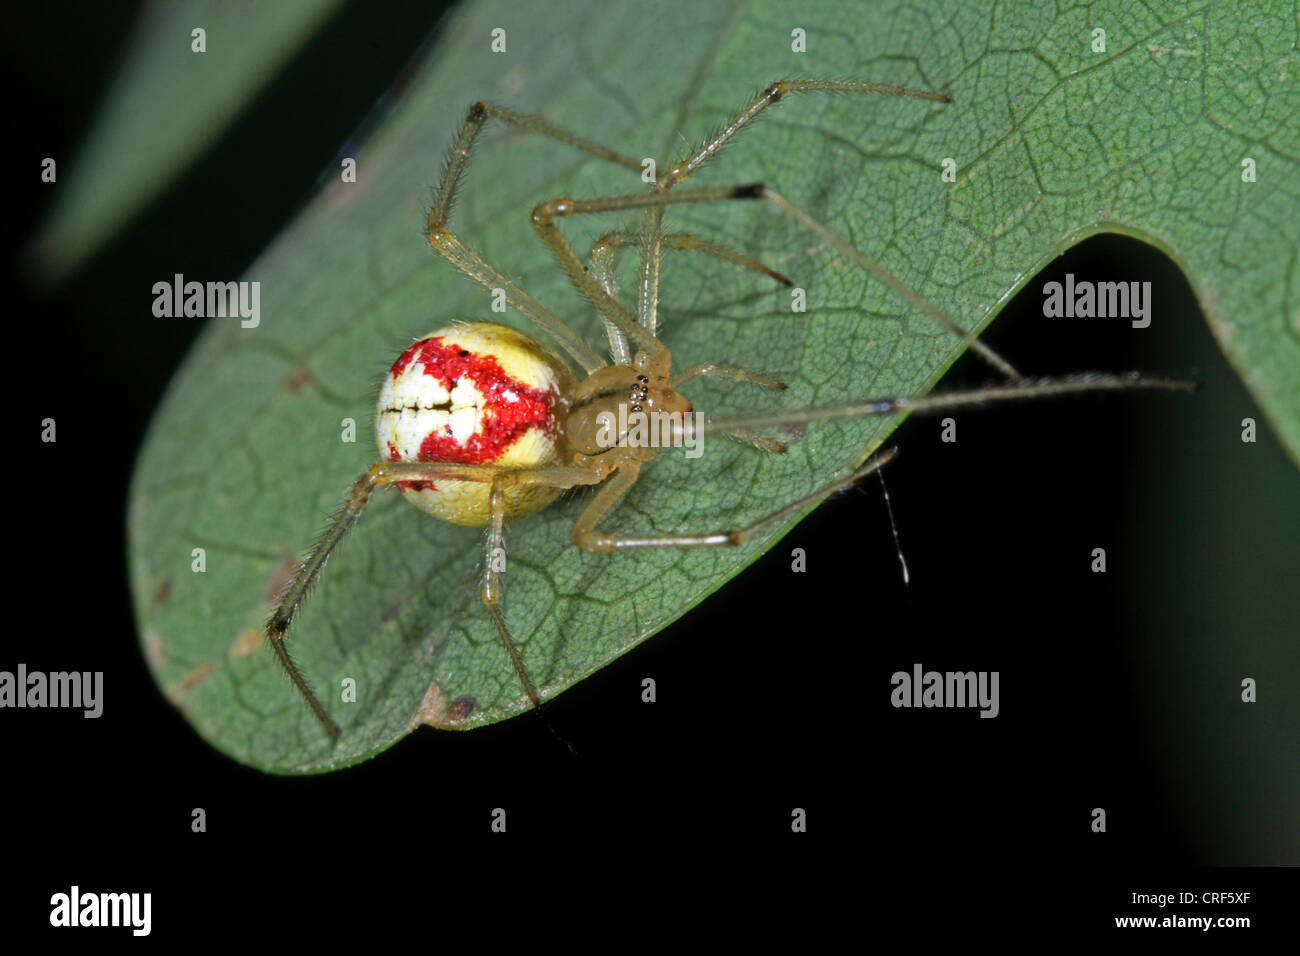 Rojo y blanco (araña Enoplognatha ovata, Enoplognatha lineata, Theridion redimitum), hembra, sentado sobre una hoja Foto de stock